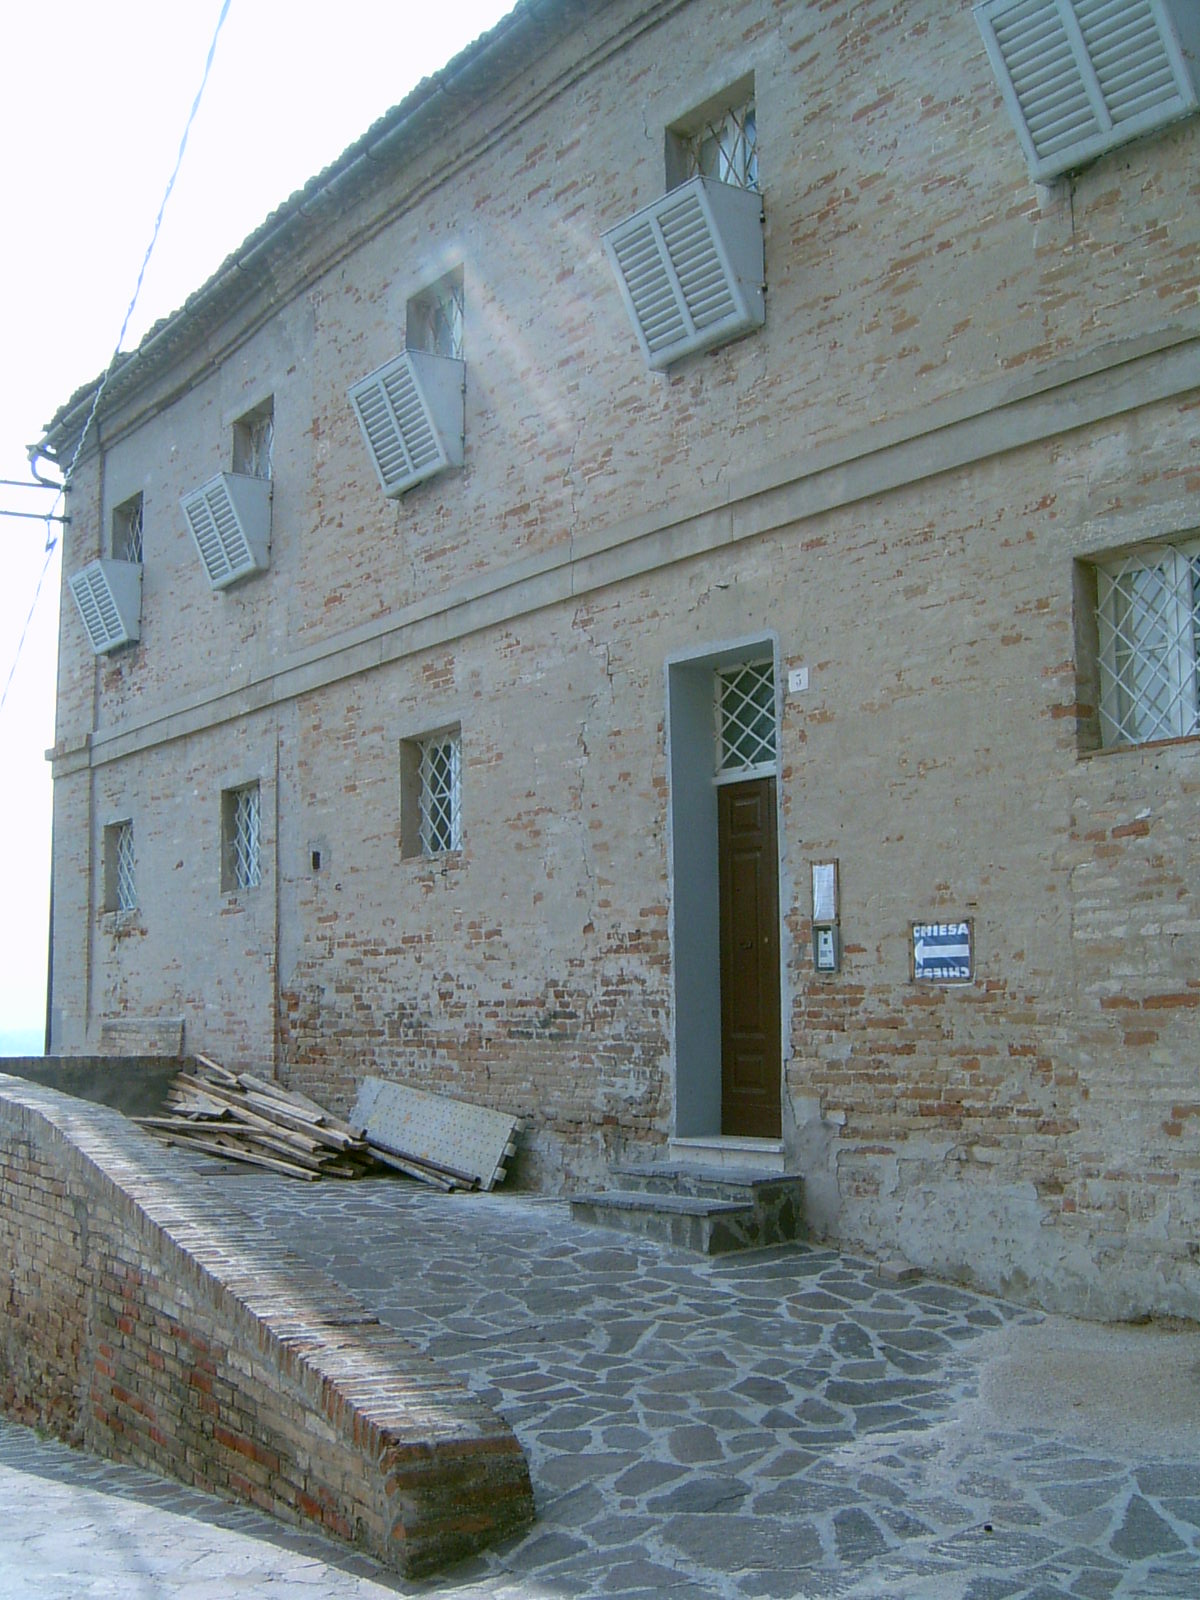 Convento di S. Chiara (convento, francescano (clarisse)) - Montegiorgio (AP) 